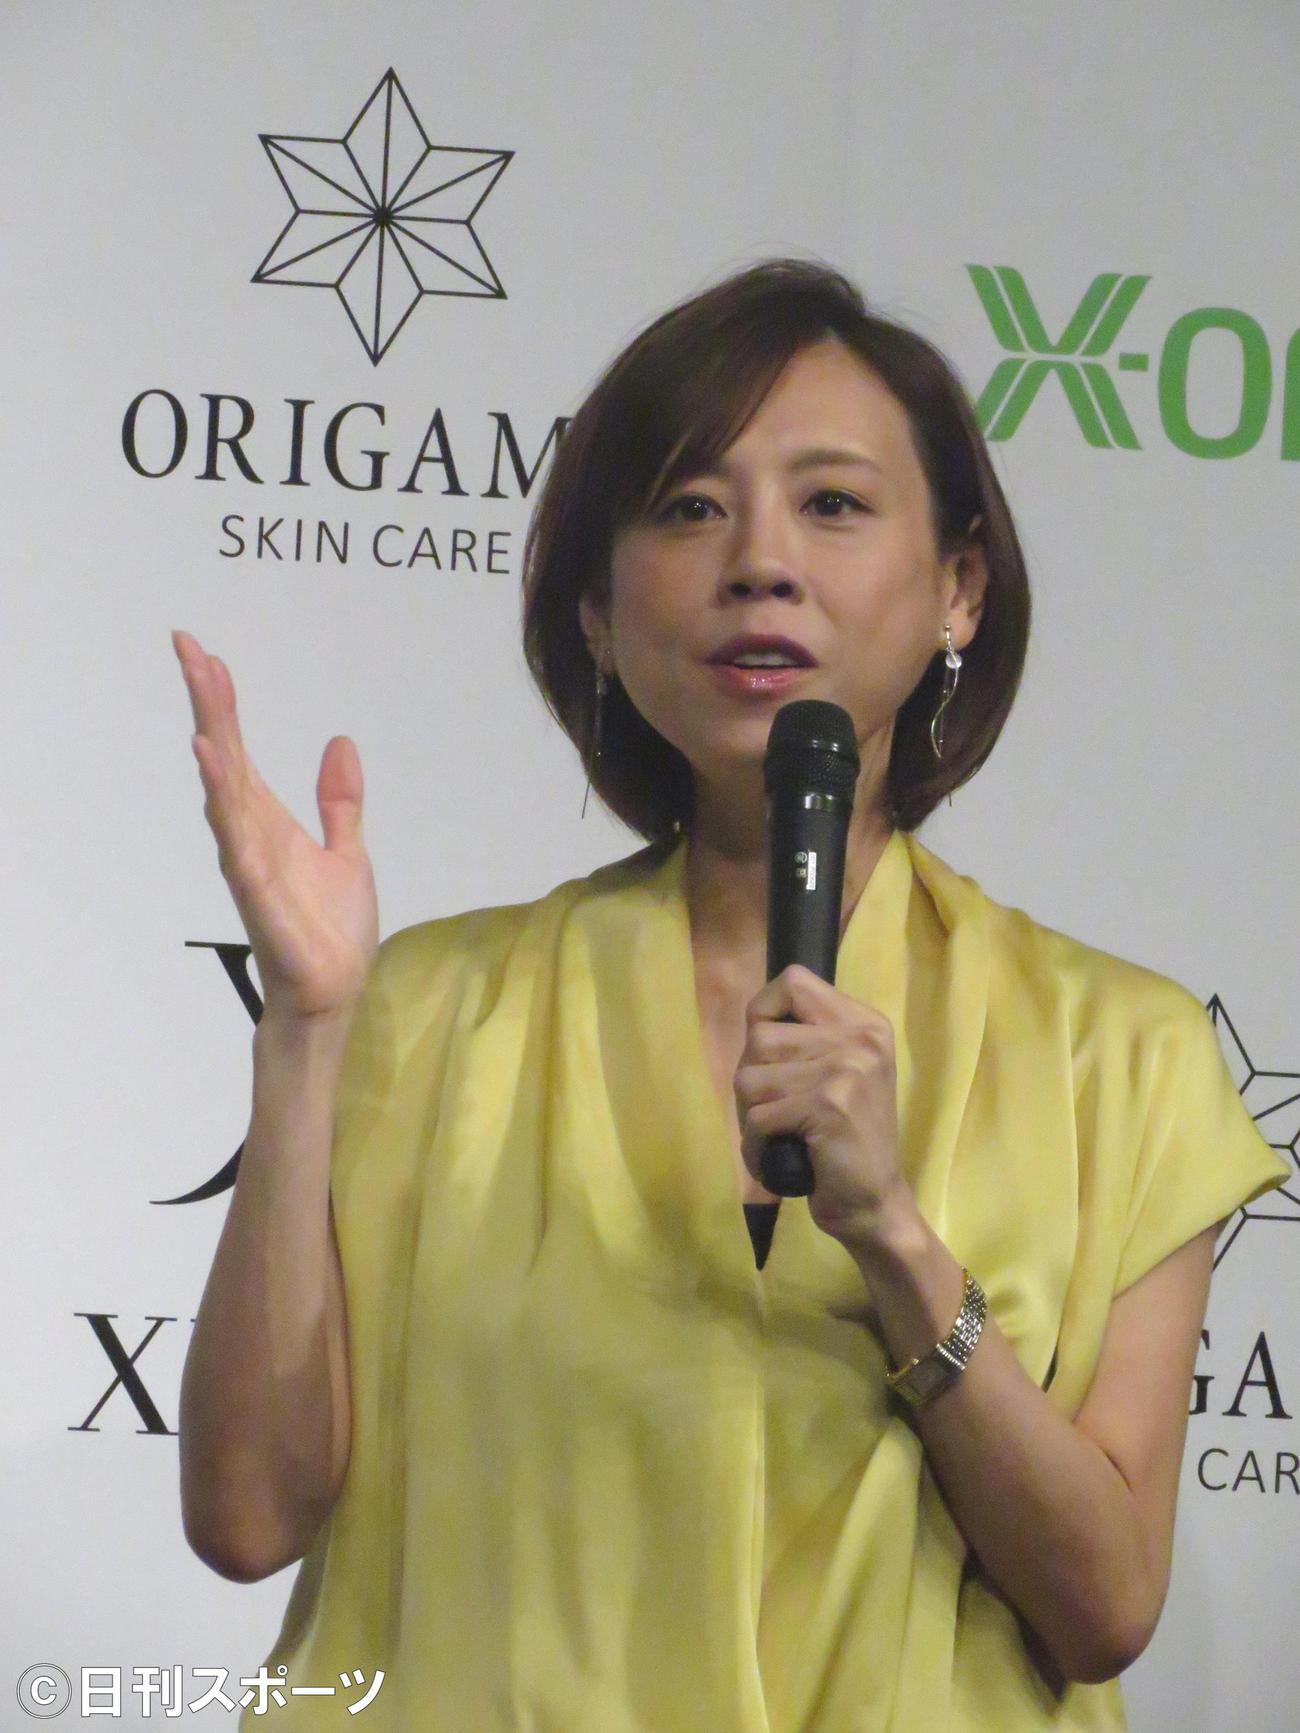 化粧品「XLUKES・ORIGAMI」ブランドアンバサダー就任発表会に出席した高橋真麻